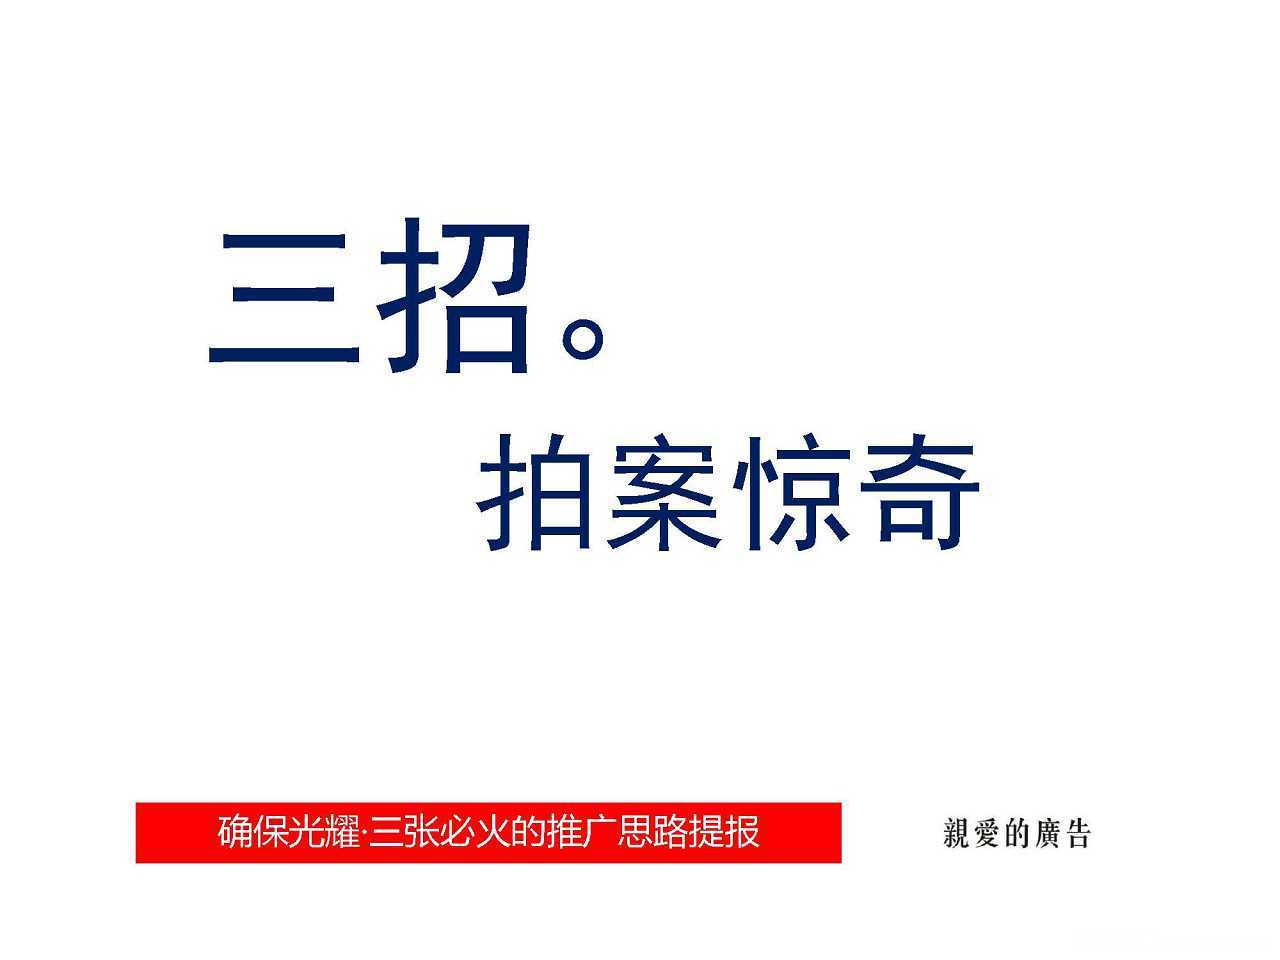 【营销任意门】光耀·三张2014阶段推广策略方案00